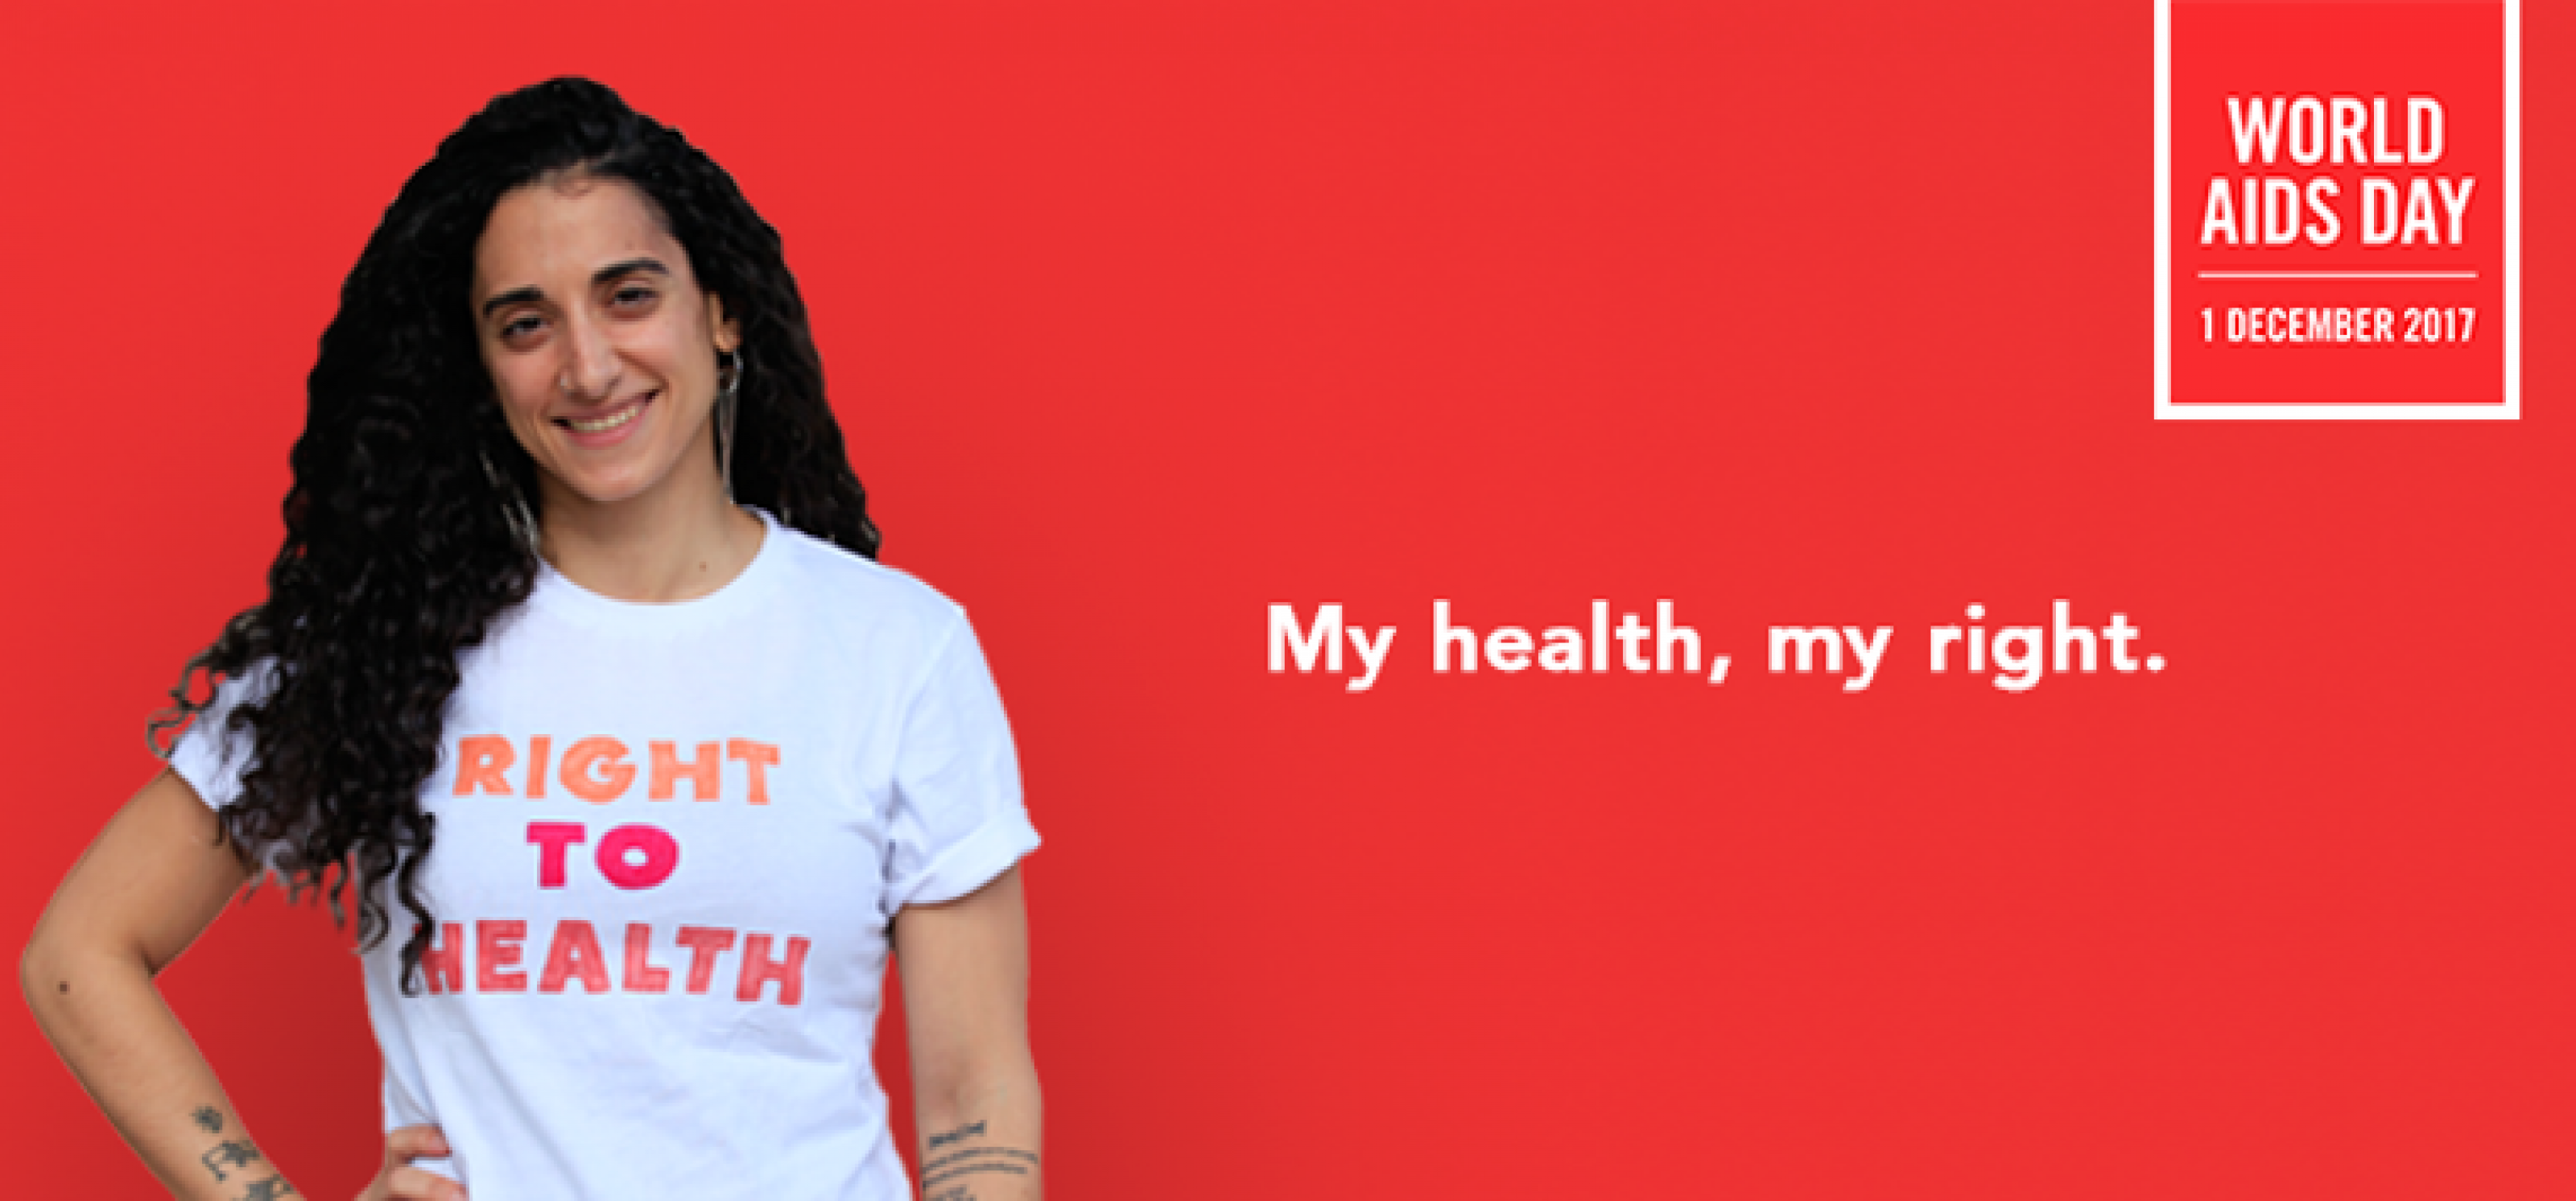 Eine Frau mit schwarzen langen Haaren und einem T-Shirt mit der Aufschrift "Right to health" vor rotem Hintergrund. Auf der roten Fläche steht der Schriftzug "My right, my health.", rechts oben in der Ecke der Schriftzug "World Aid Day. 1st December 2017."